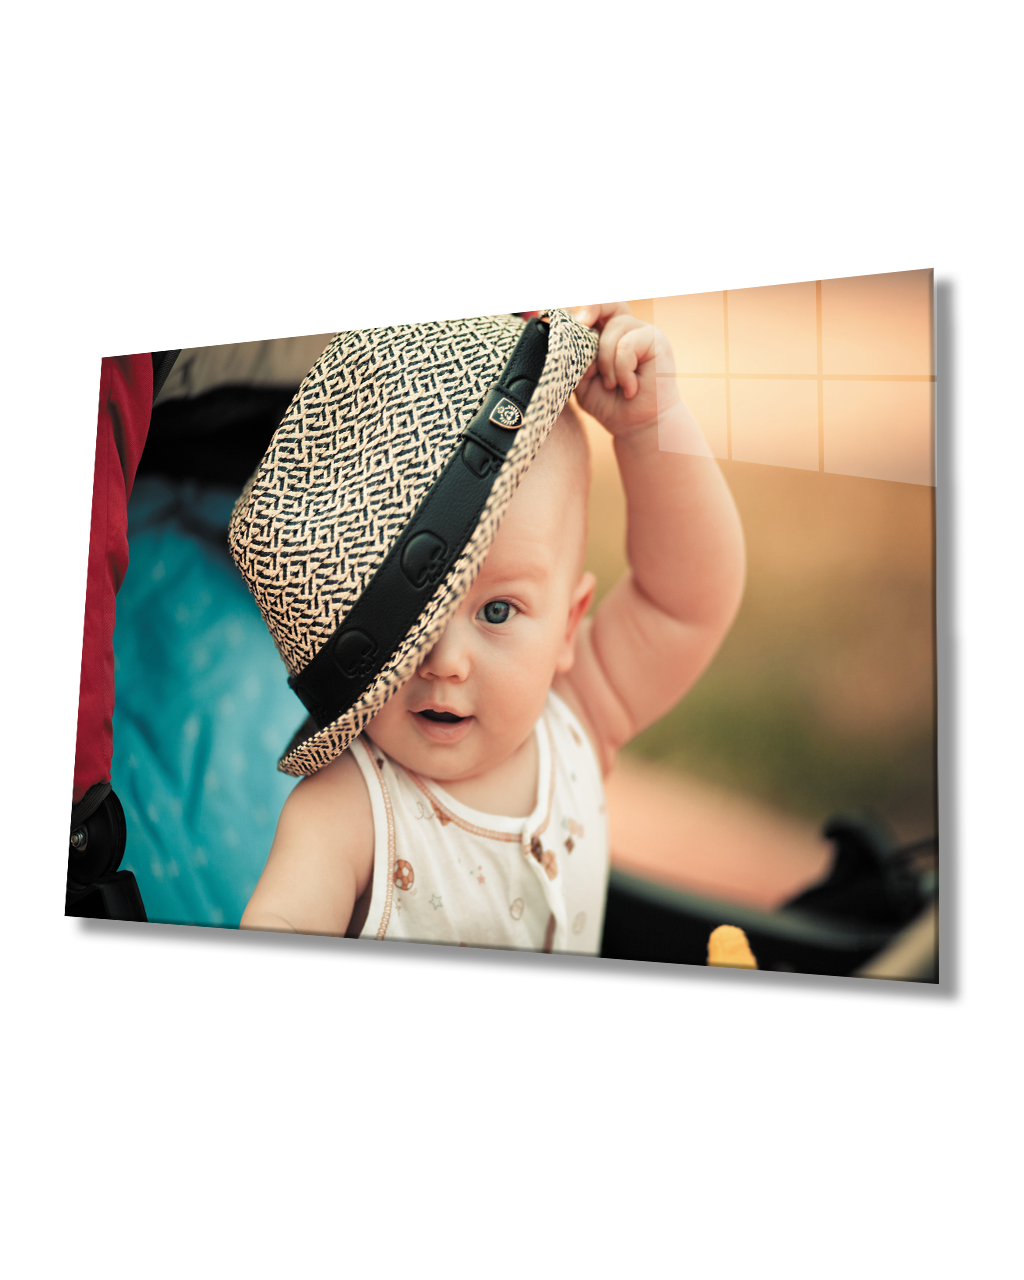 Şapkalı Bebek Cam Tablo  4mm Dayanıklı Temperli Cam Baby Glass Table With Hat 4mm Durable Tempered Glass